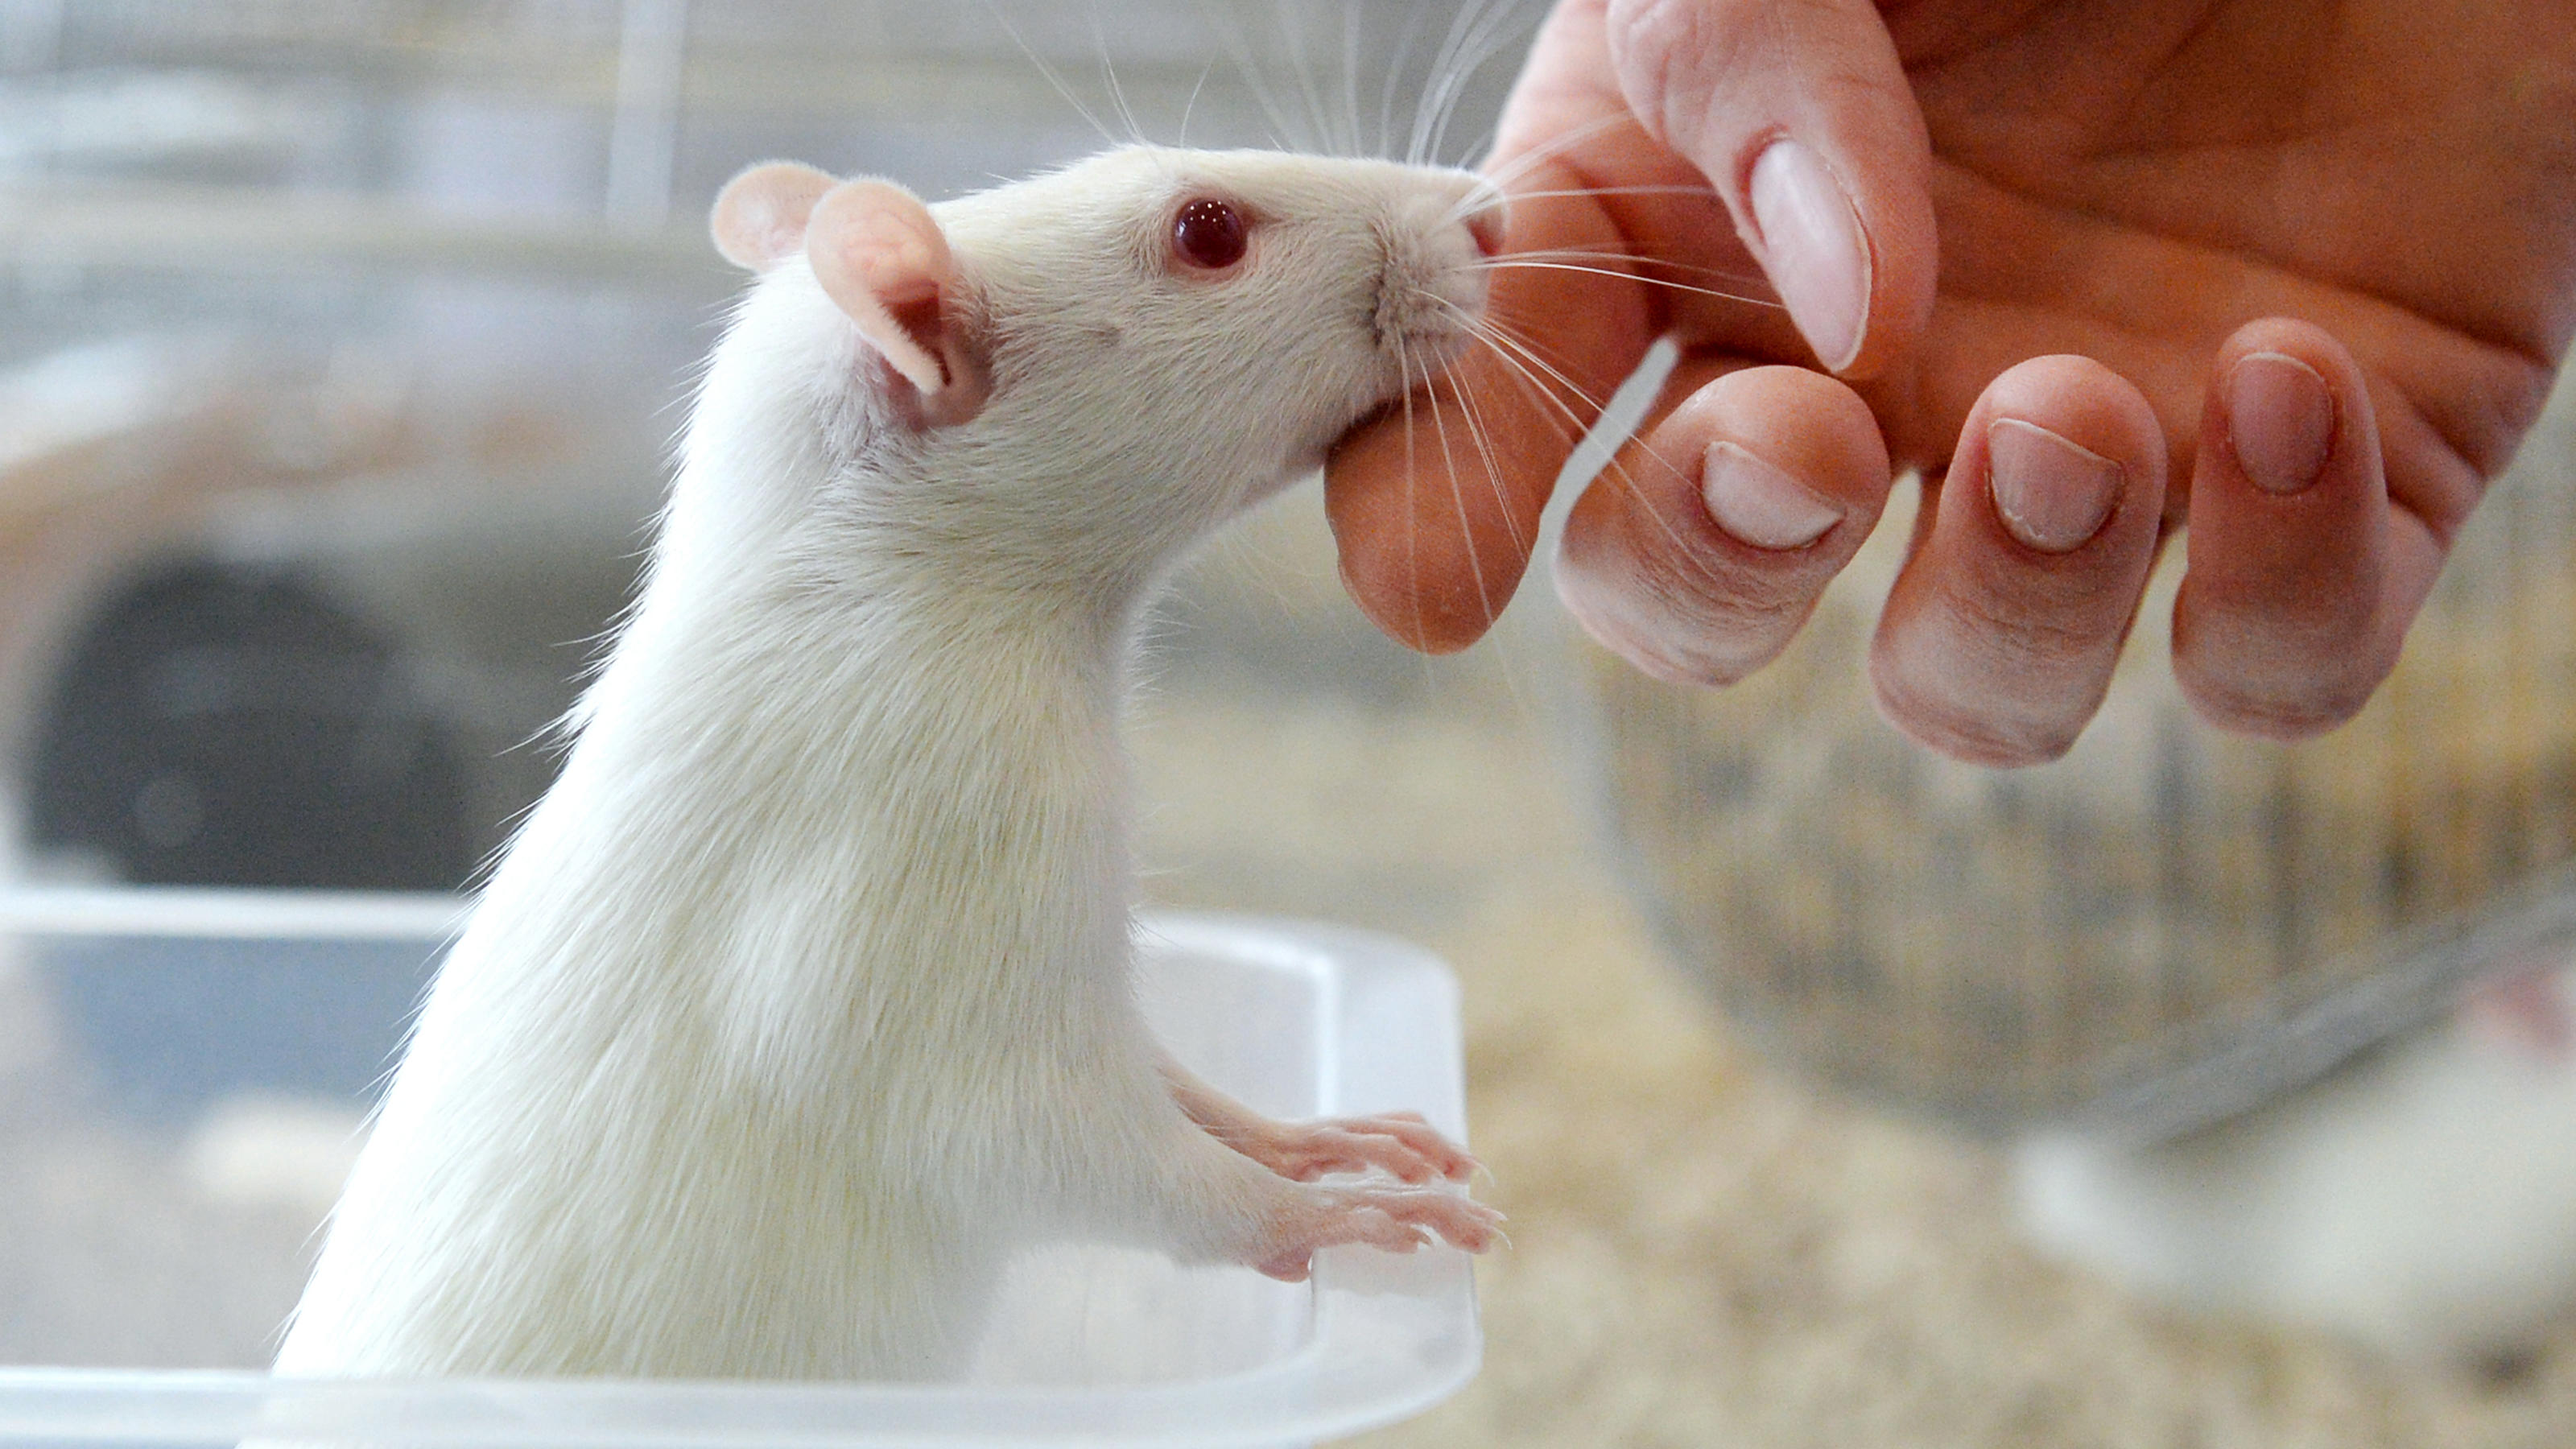 Mäuse und Ratten dienen als Versuchstiere für die geplante Transplantation der Organe.